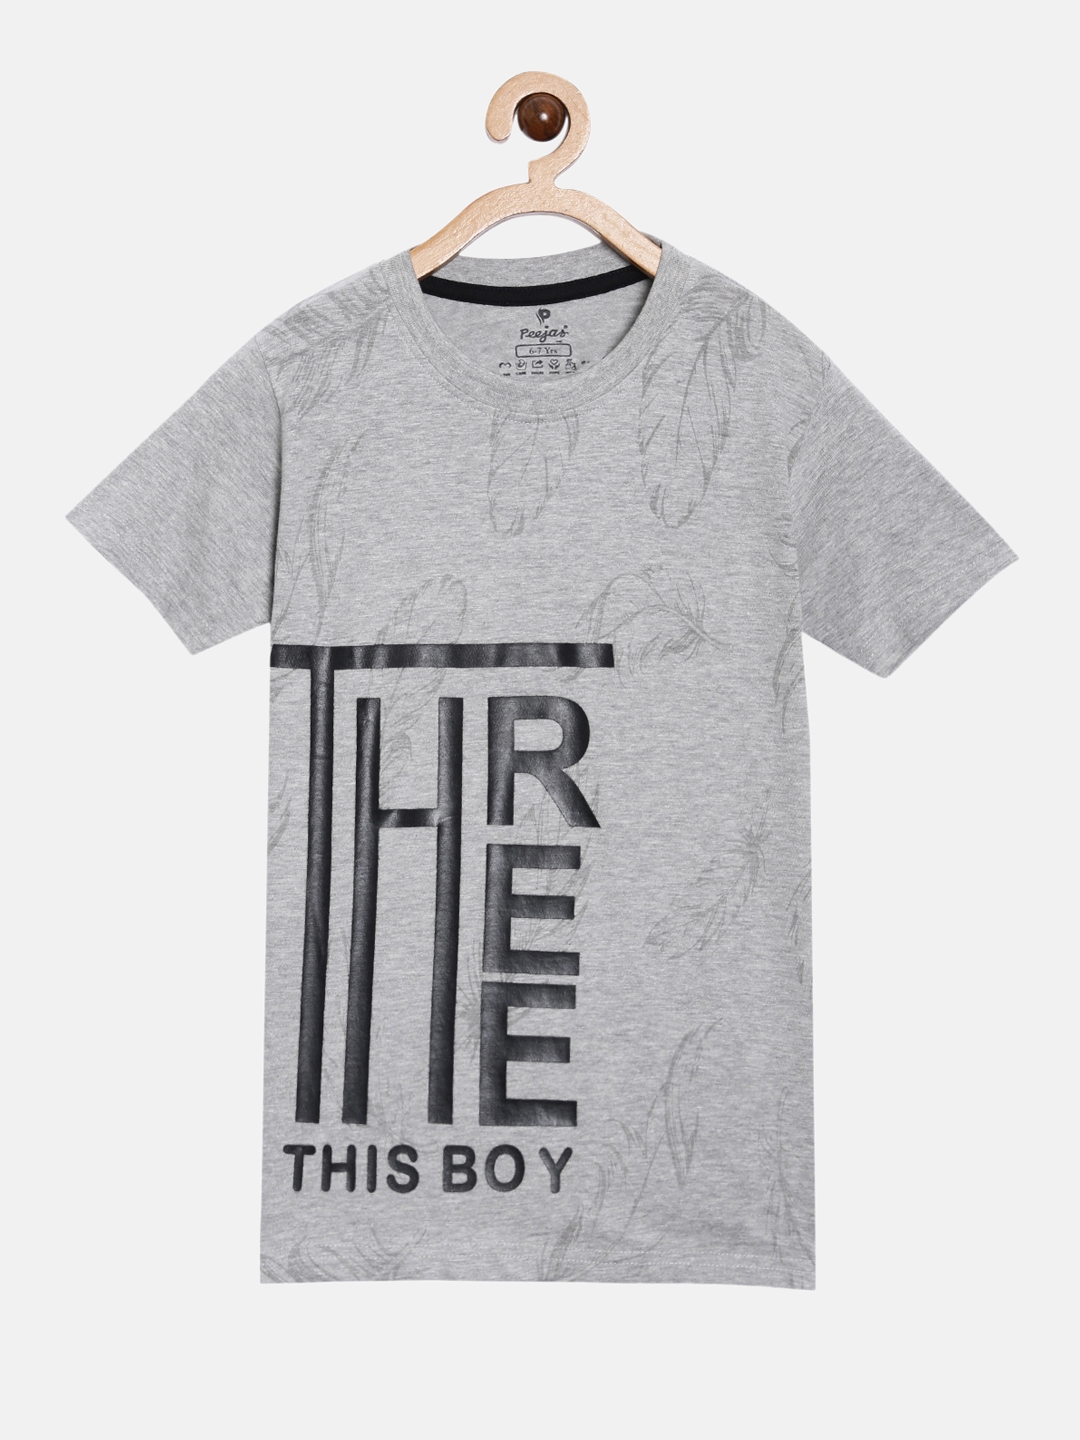 Peejas Kids Boys 100% Cotton Printed Casual Tshirt